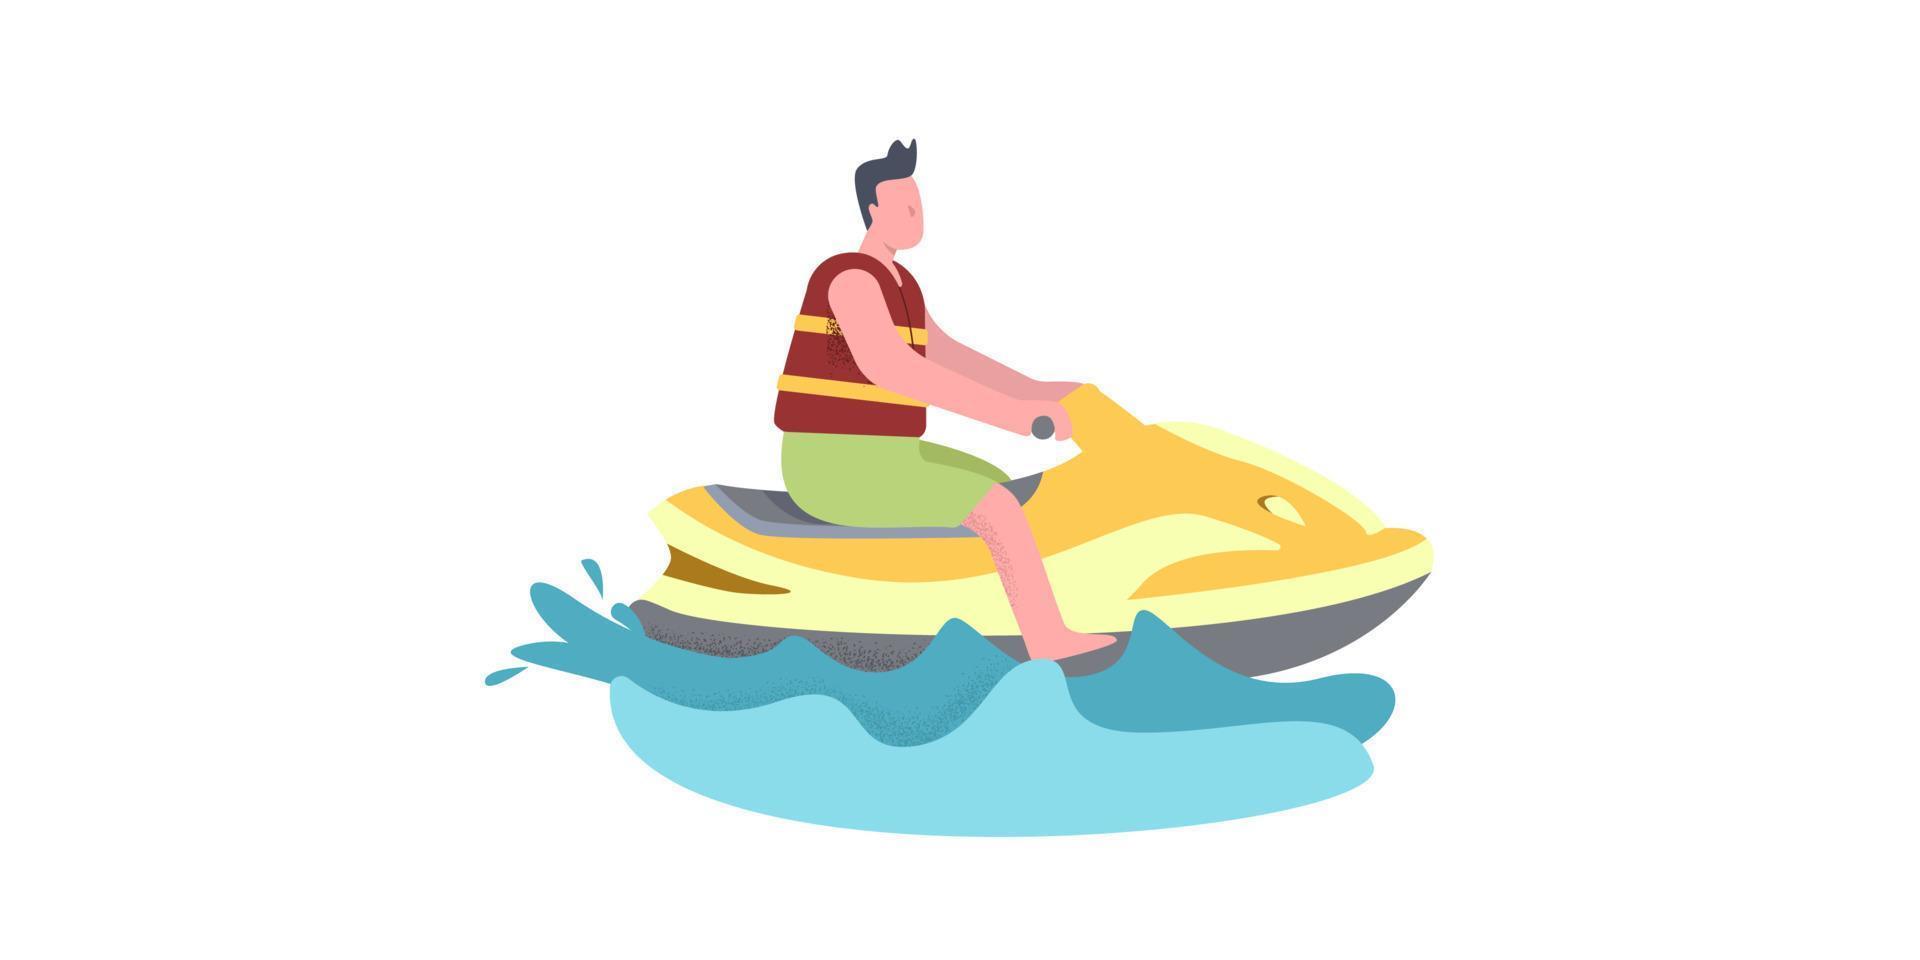 Ein Mann fährt Jetski. Illustration in warmen gelb-roten Farben vektor